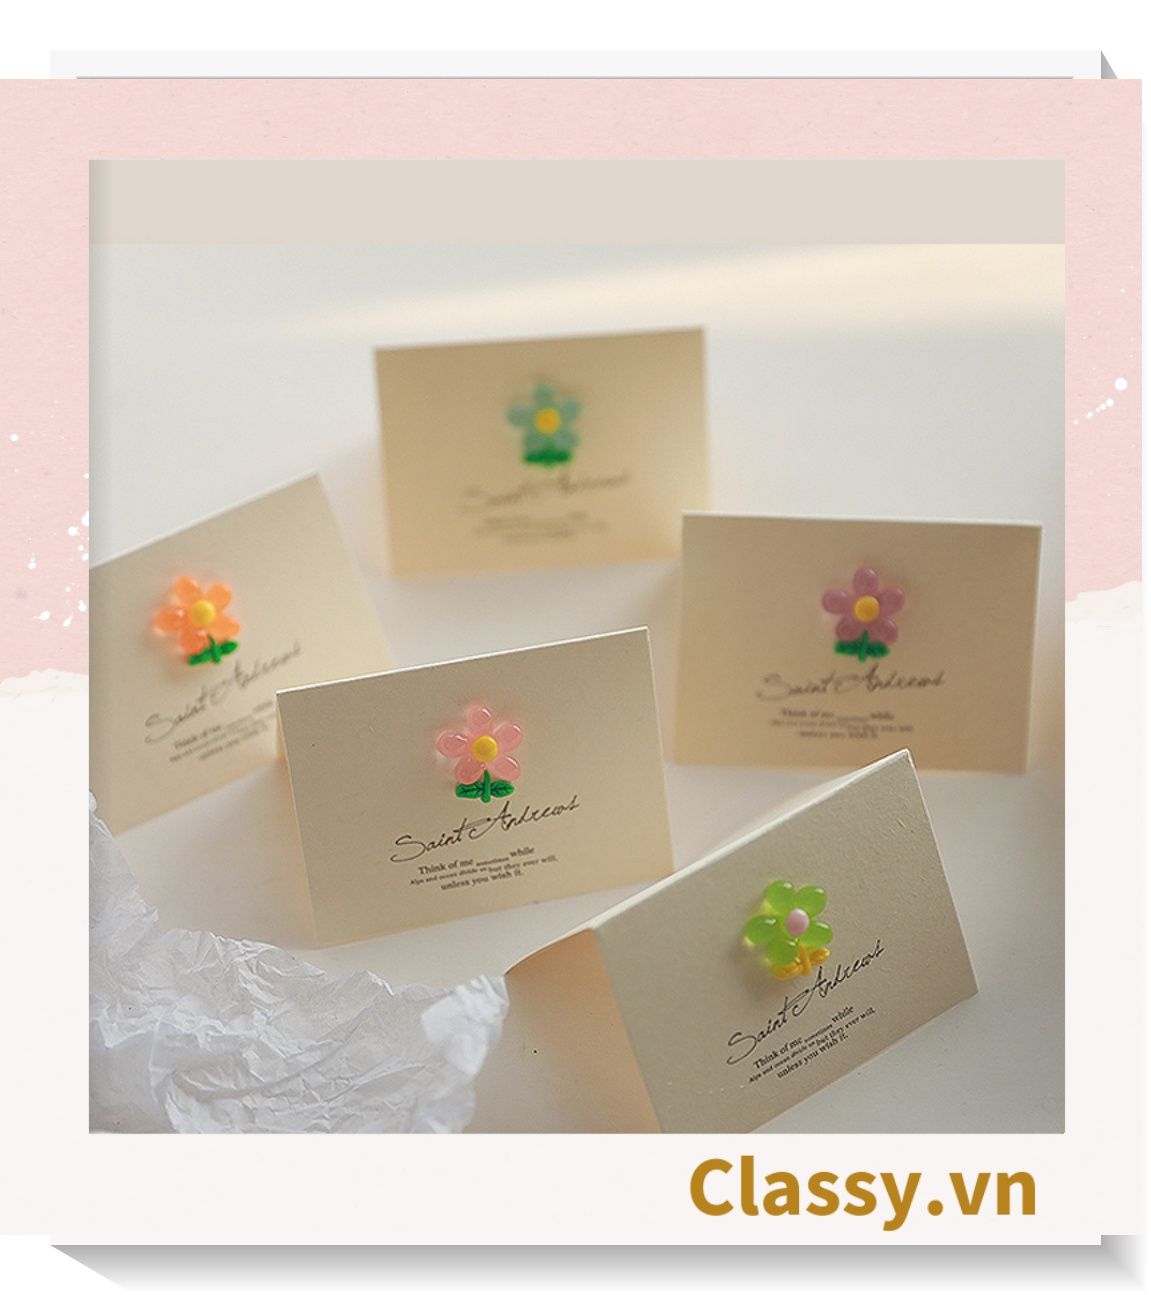  Classy Thiệp chúc mừng, thiệp đính hoa nhựa đẹp tinh tế, quà tặng sinh nhật, lễ hội Q1496 